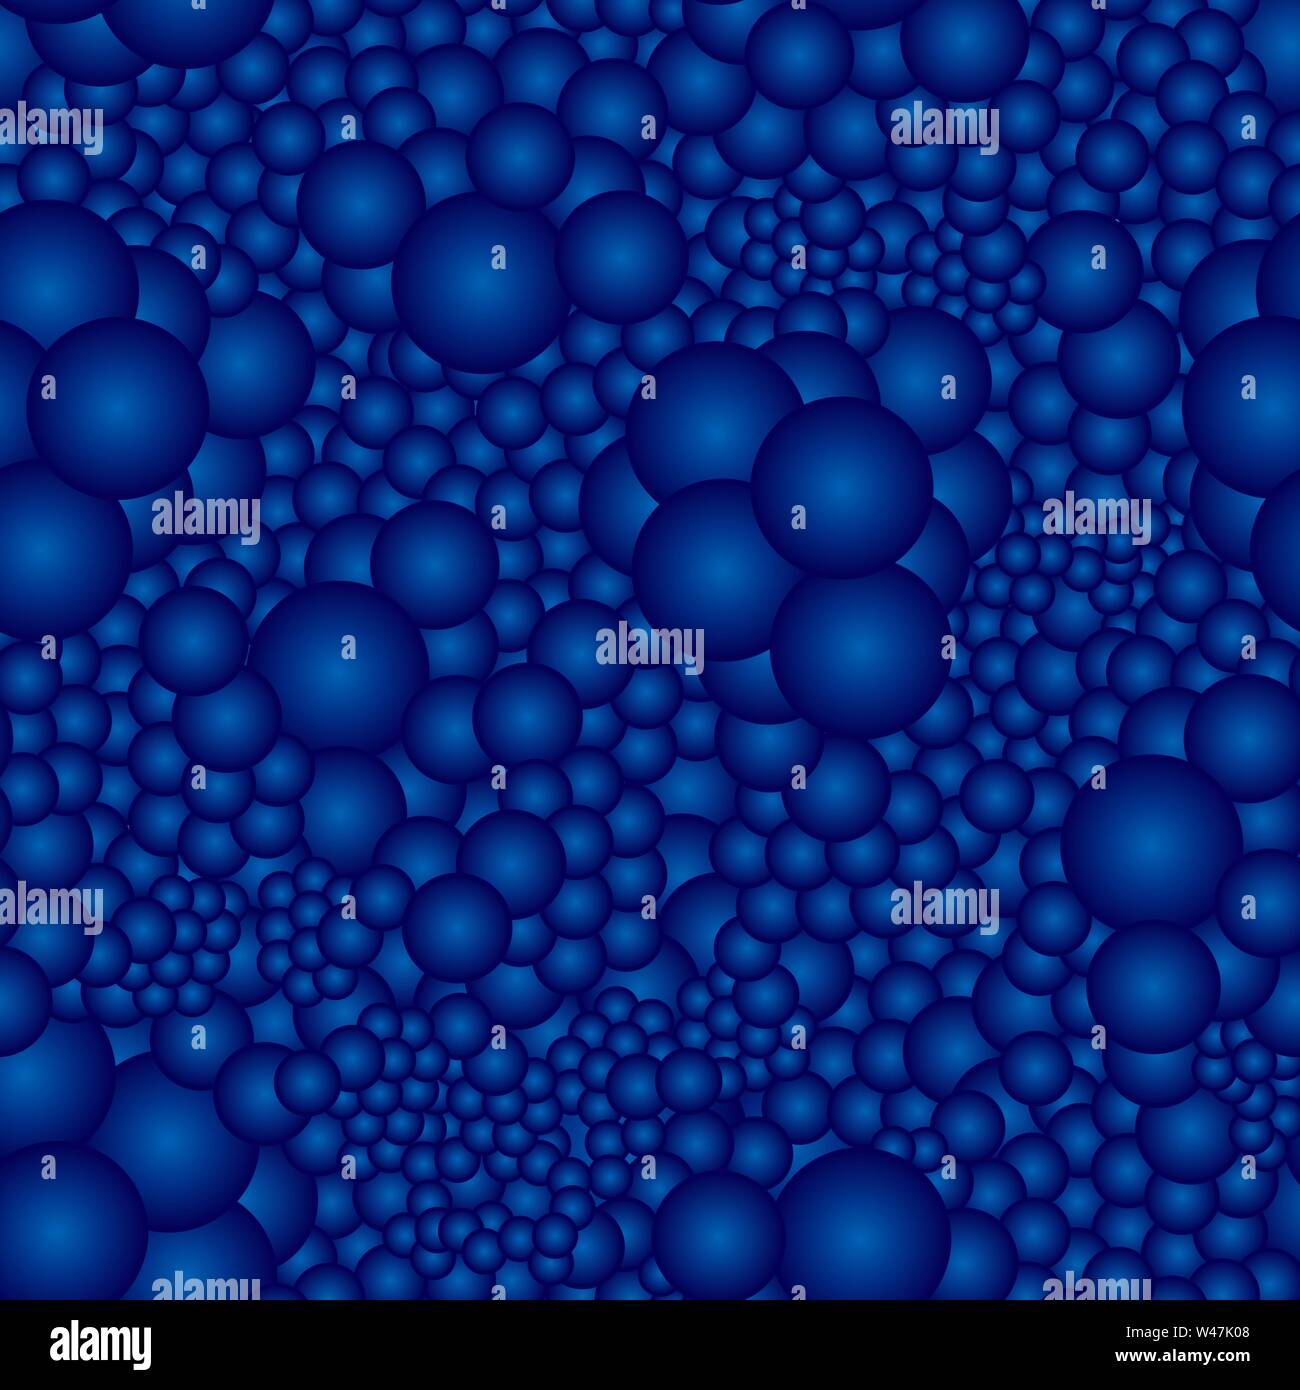 Nahtlose Muster mit blauen volumetrische Sphären. Ideal für Textilien, Verpackung, Papier drucken, einfache Hintergründe und Texturen. Stock Vektor